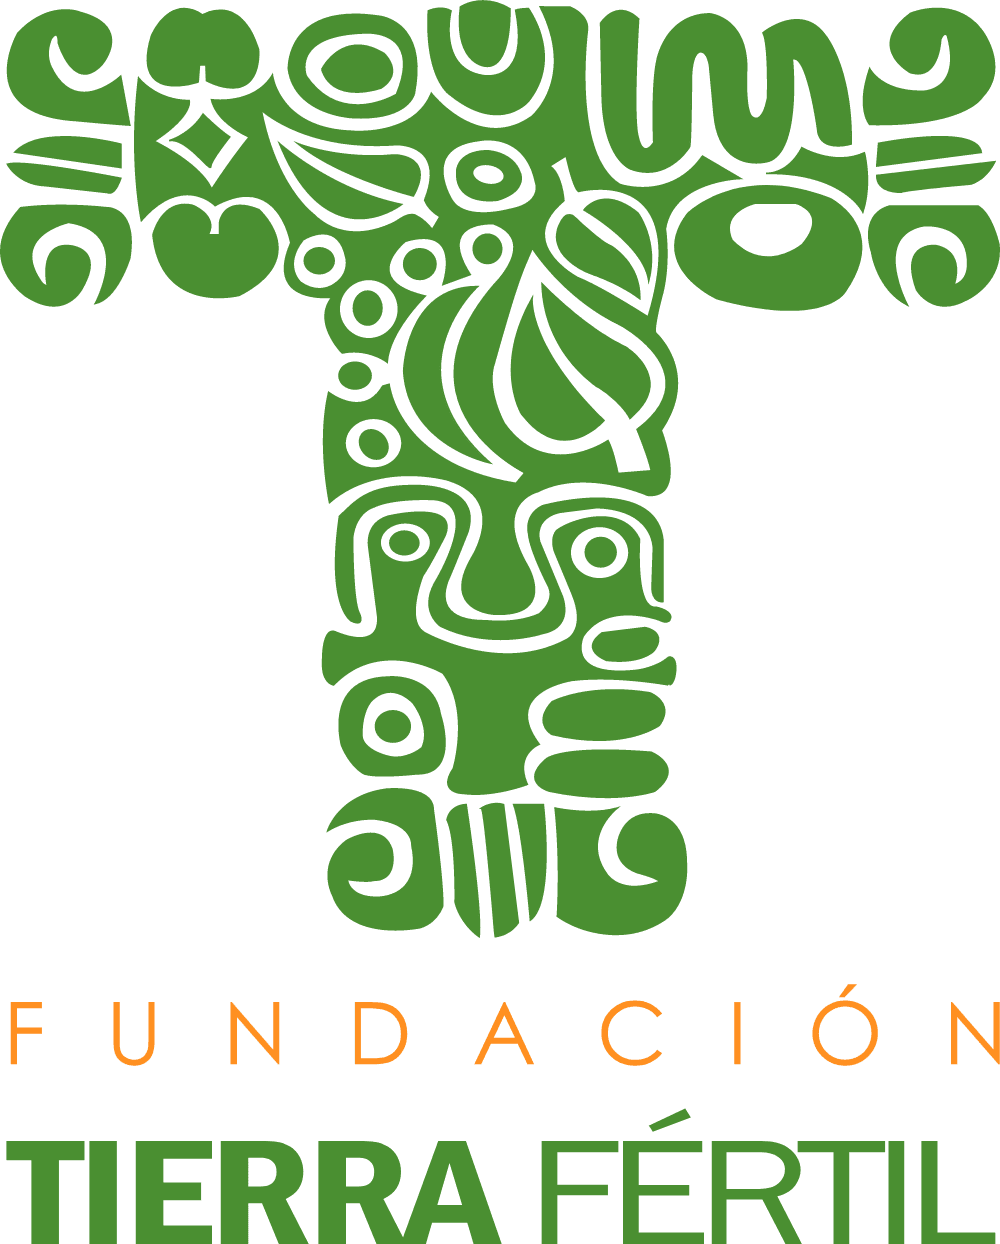 Fundación Tierra Fértil Logo download